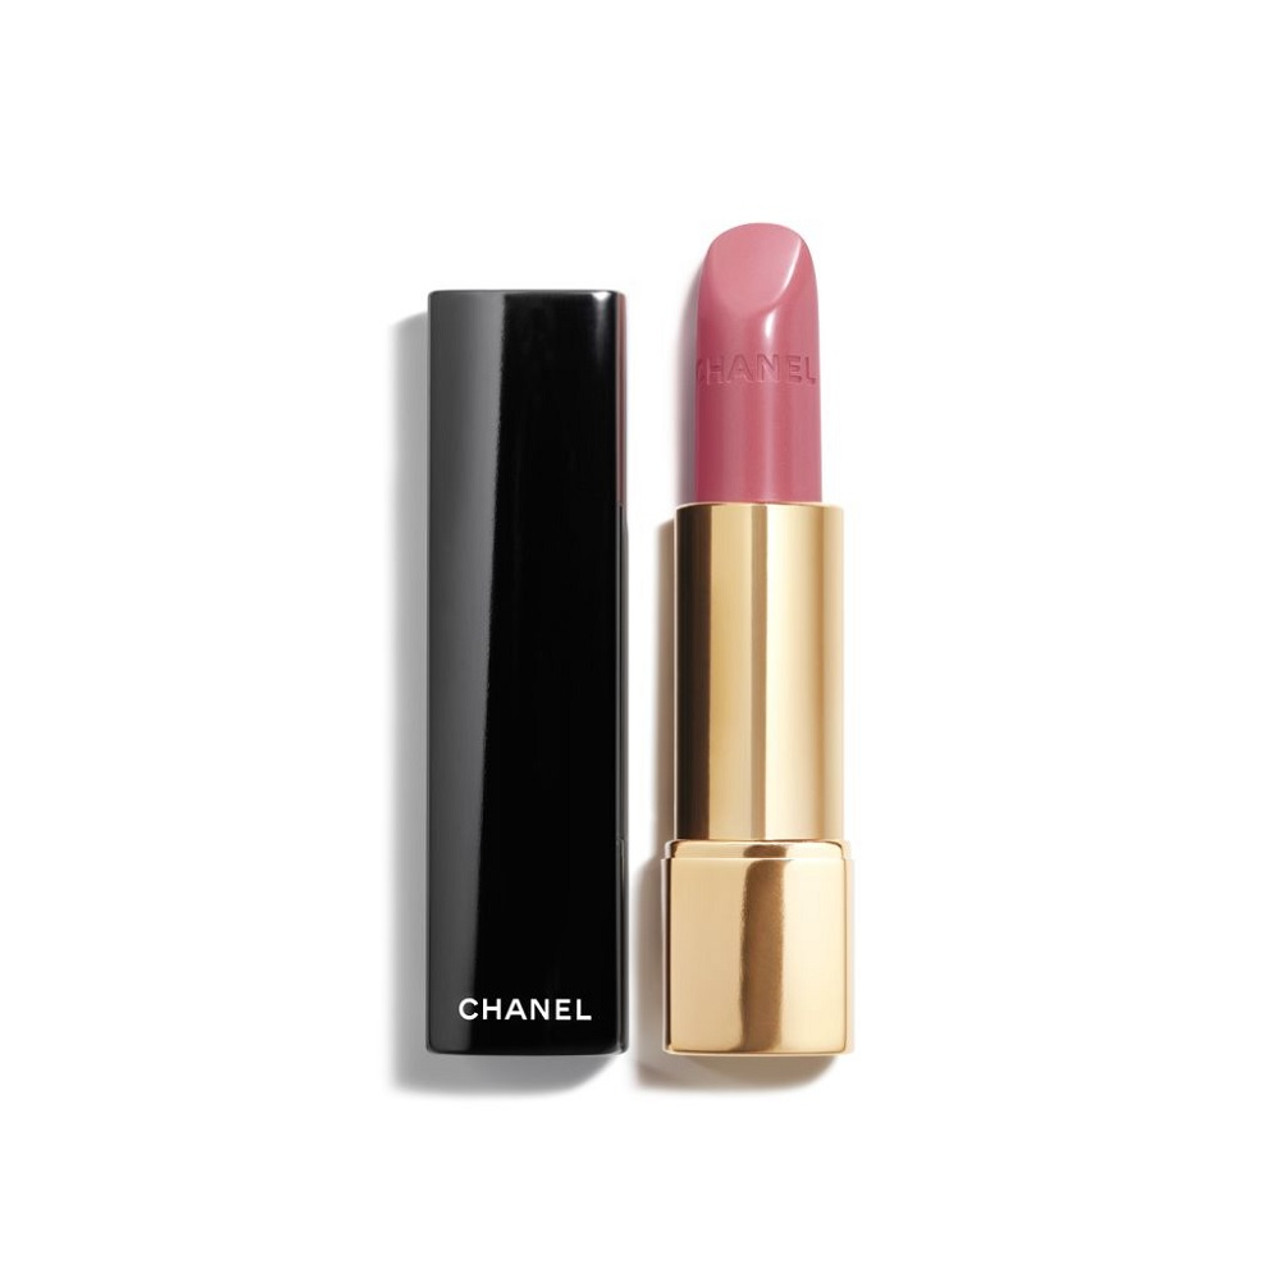 Rouge Allure Luminous Intense Lip Colour - 91 Seduisante by Chanel for  Women - 0.12 oz Lipstick 